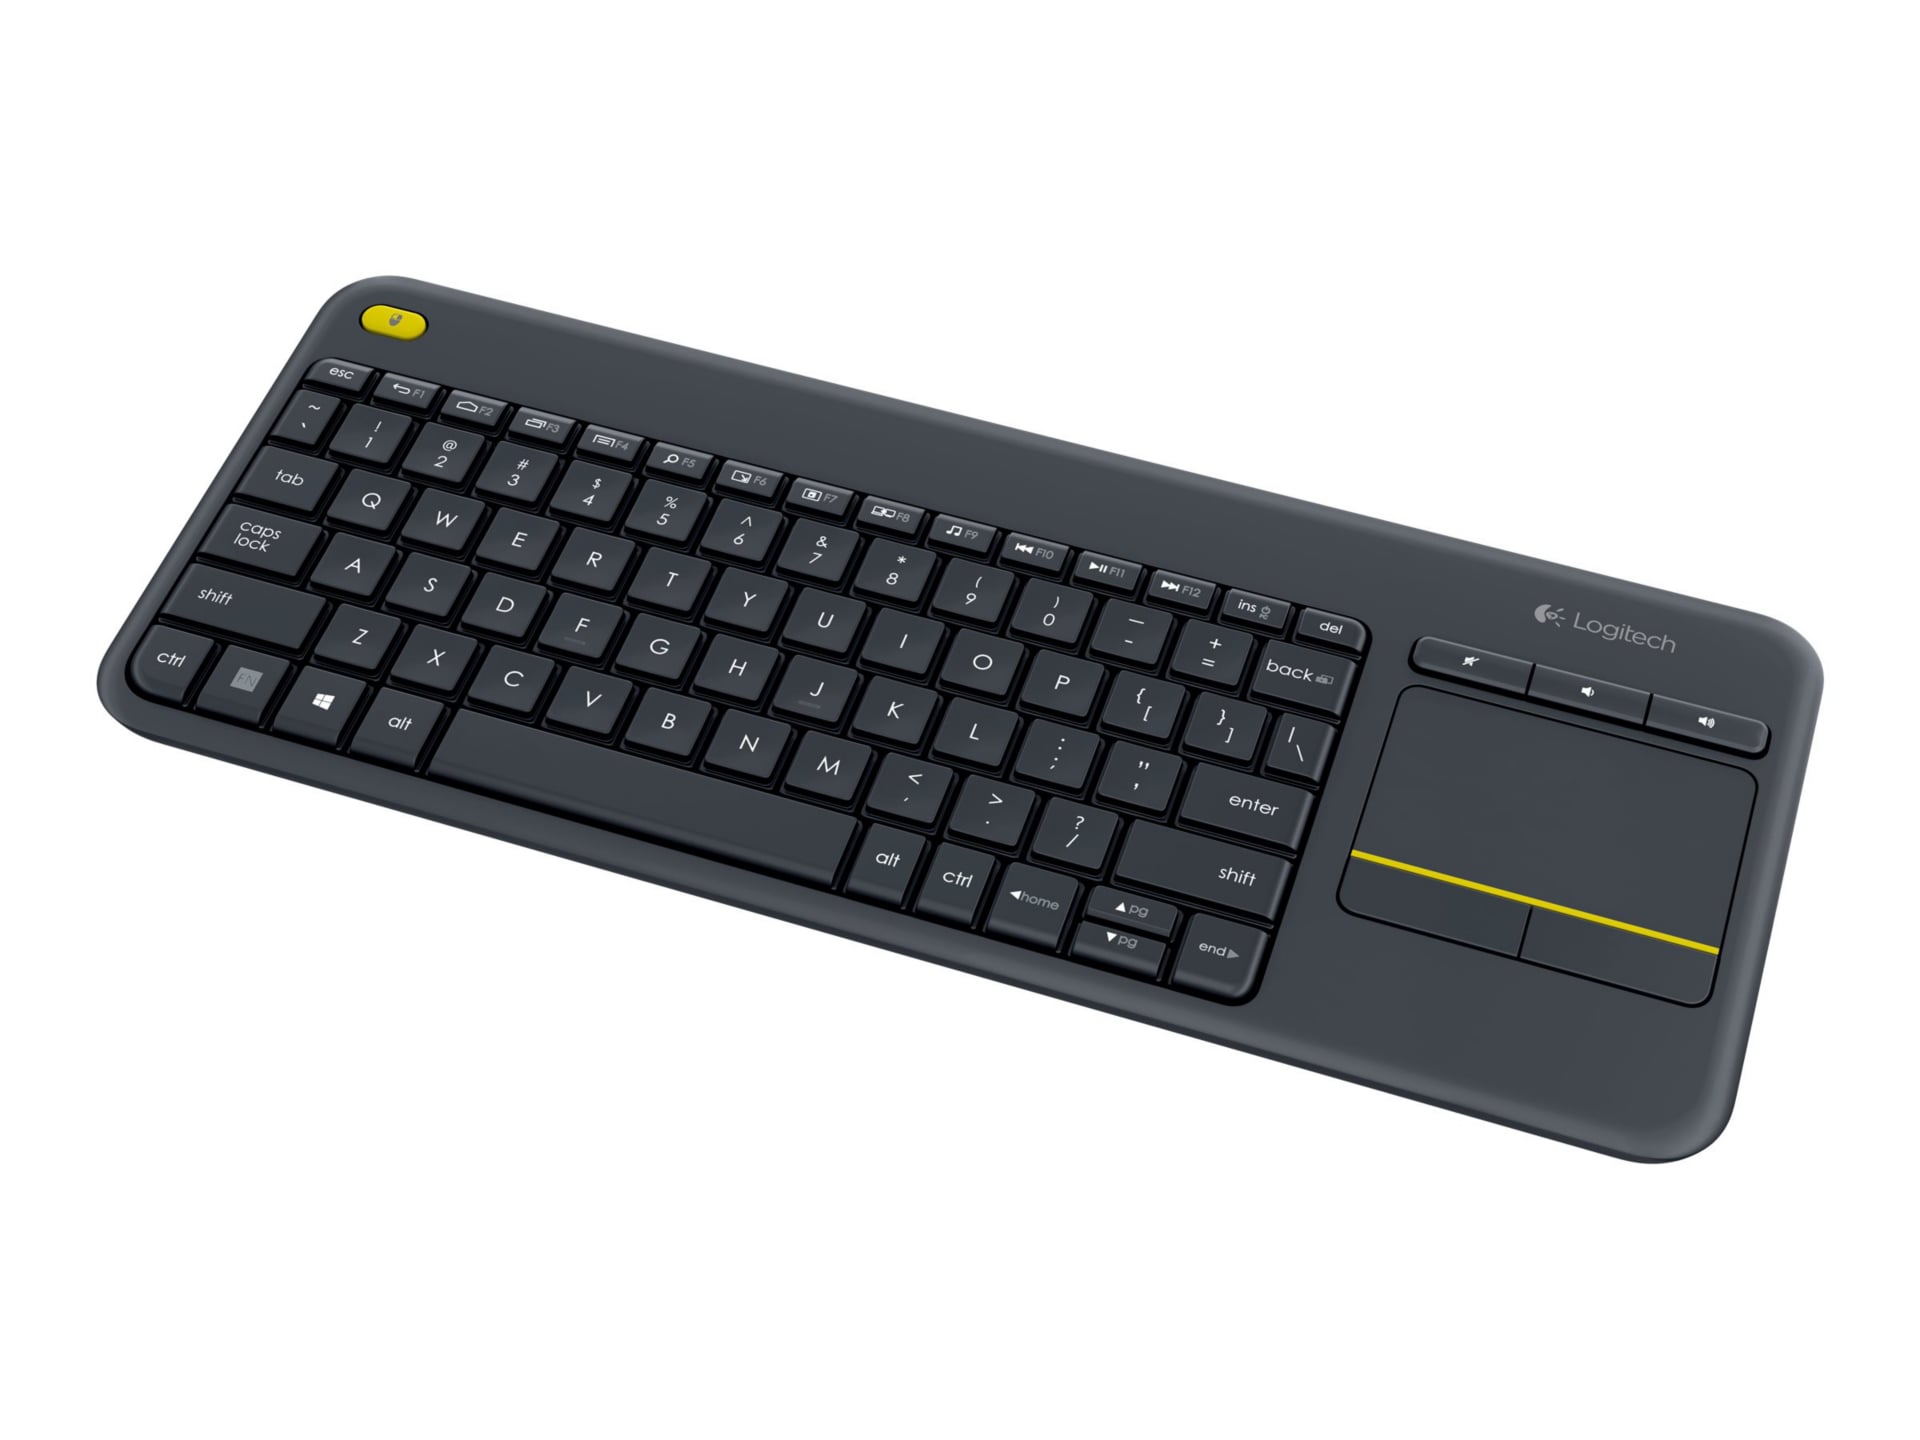 Logitech Wireless Touch Keyboard K400 Plus - keyboard - with touchpad - Fre